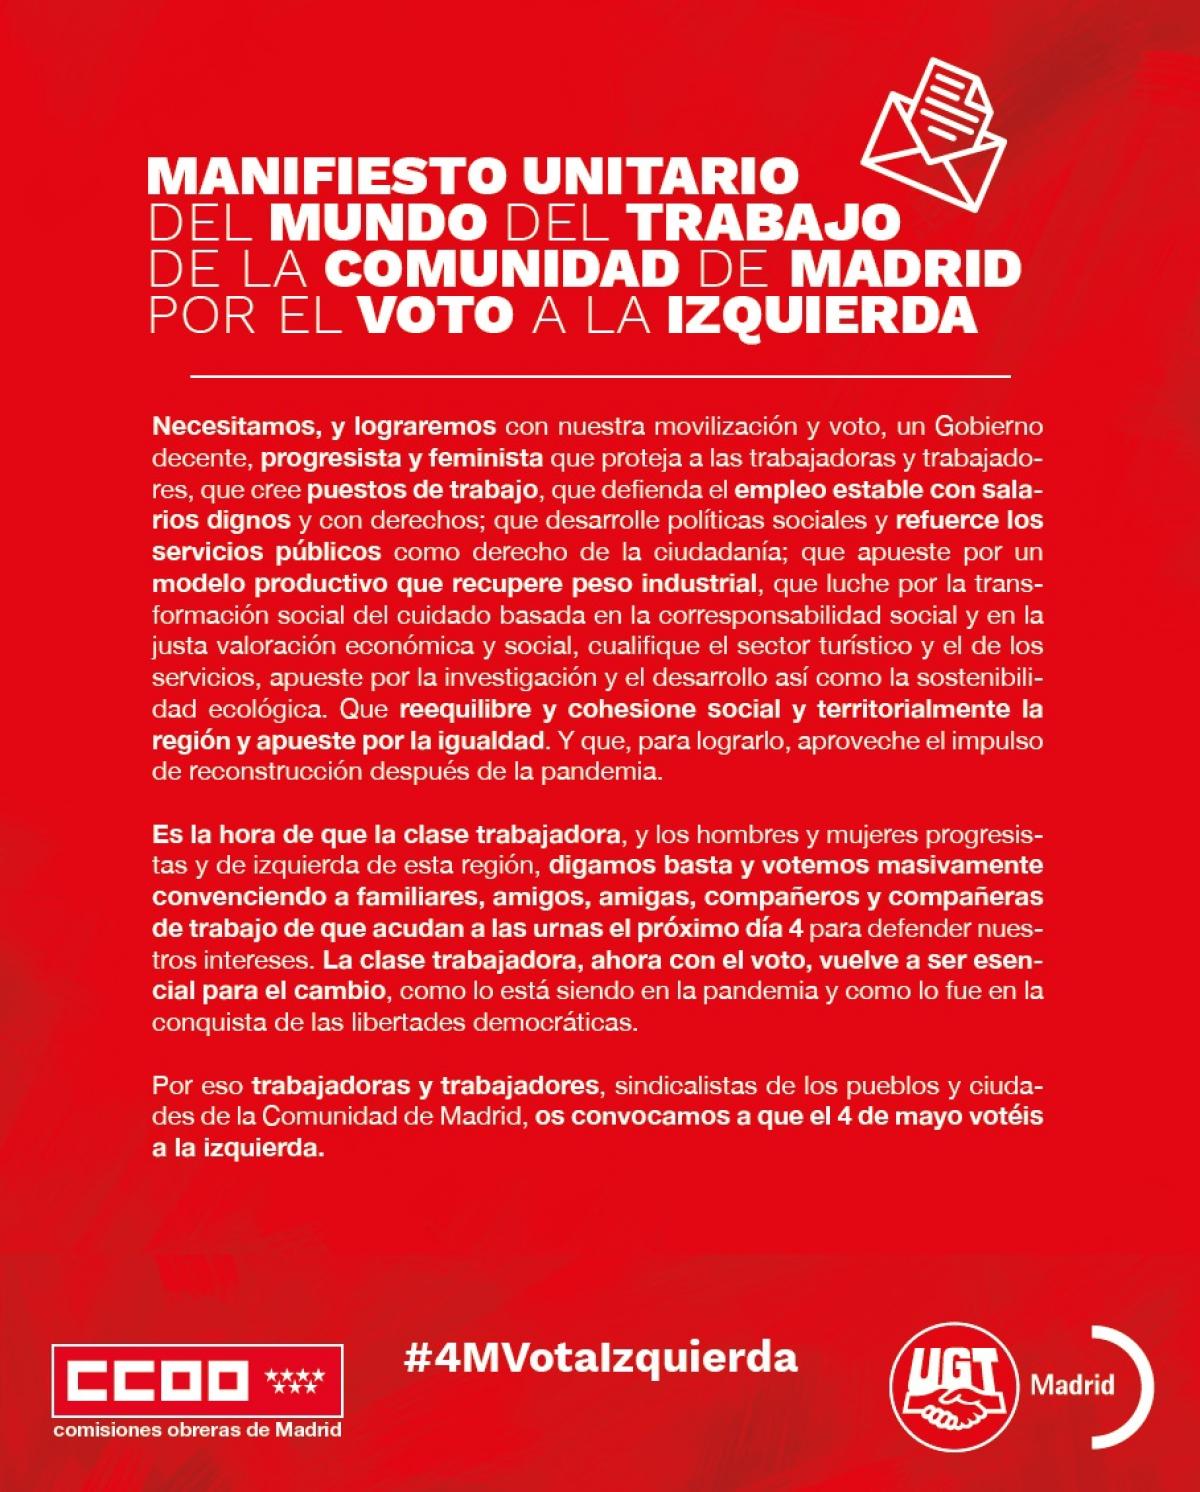 Manifiesto unitario del mundo del trabajo de la Comunidad de Madrid por el voto de la izquierda